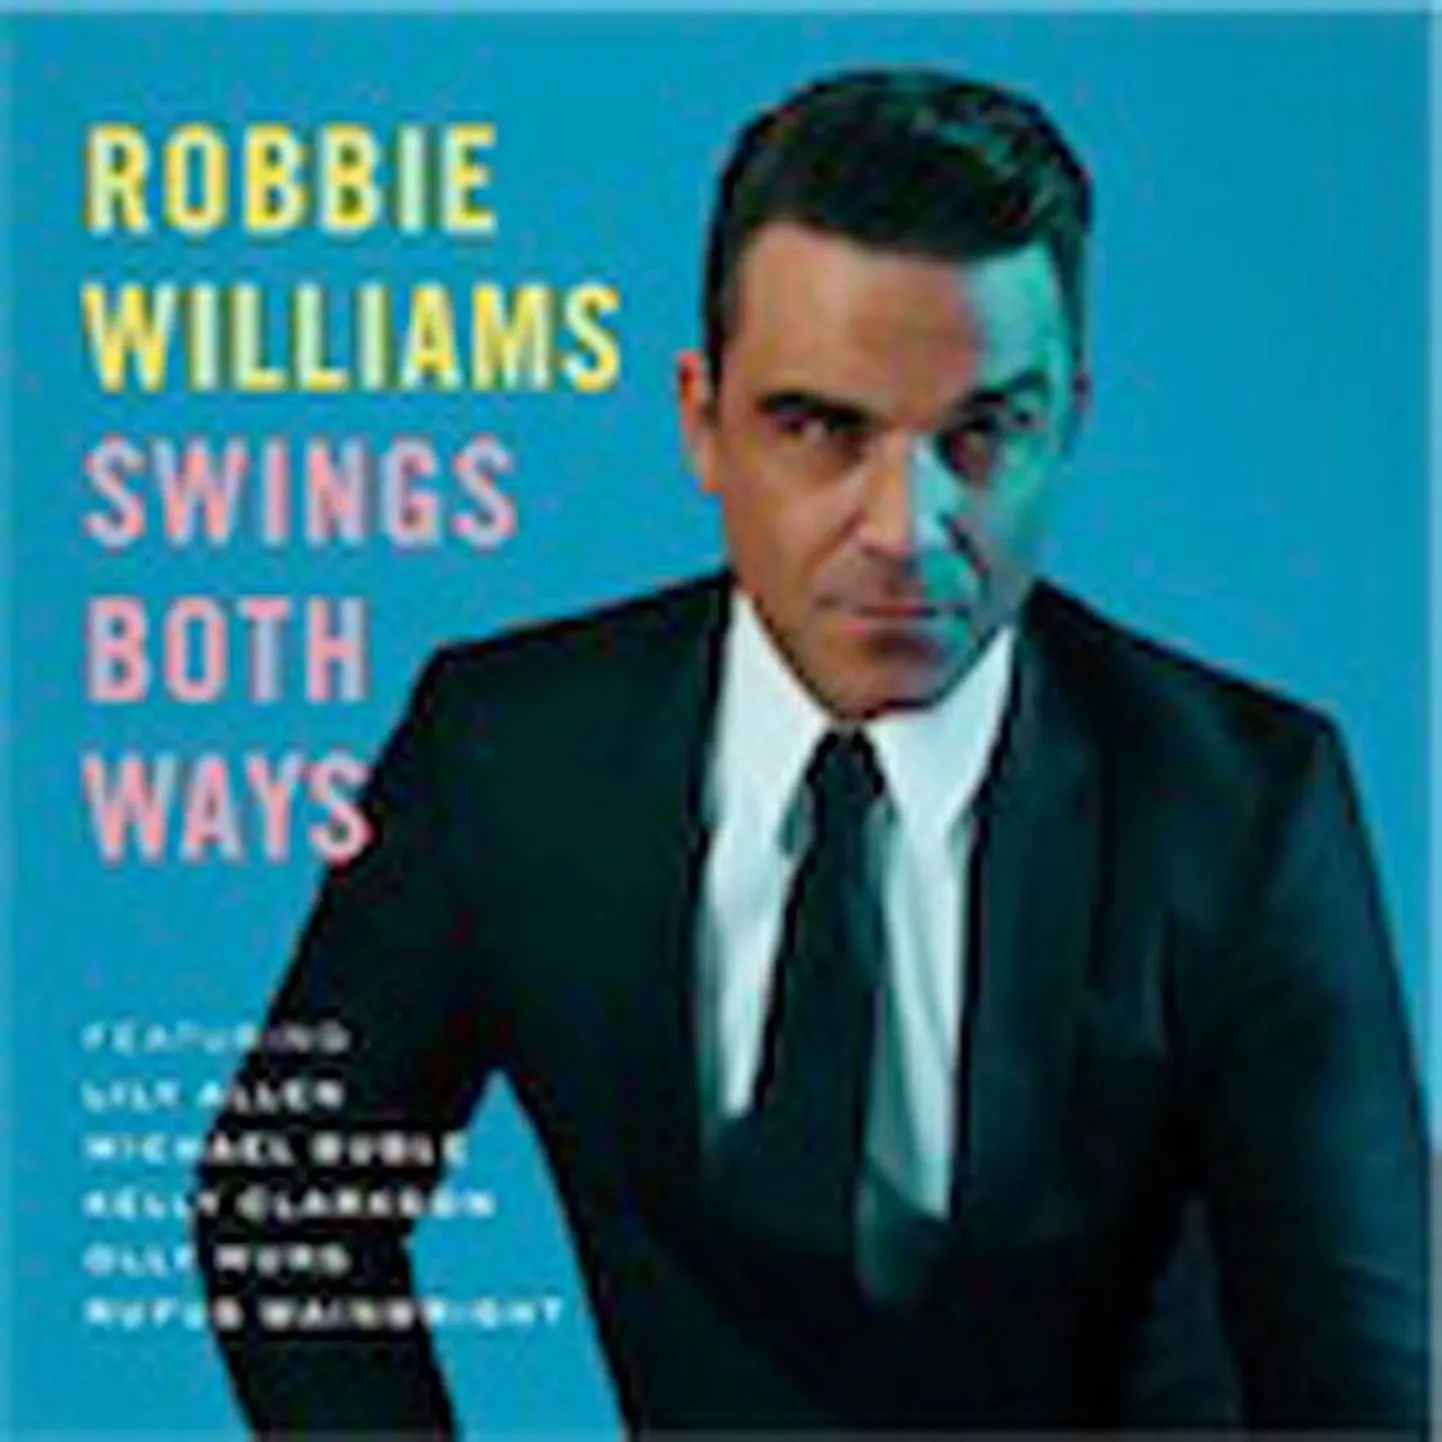 Robbie Williams
Swings Both Ways 
(Island)